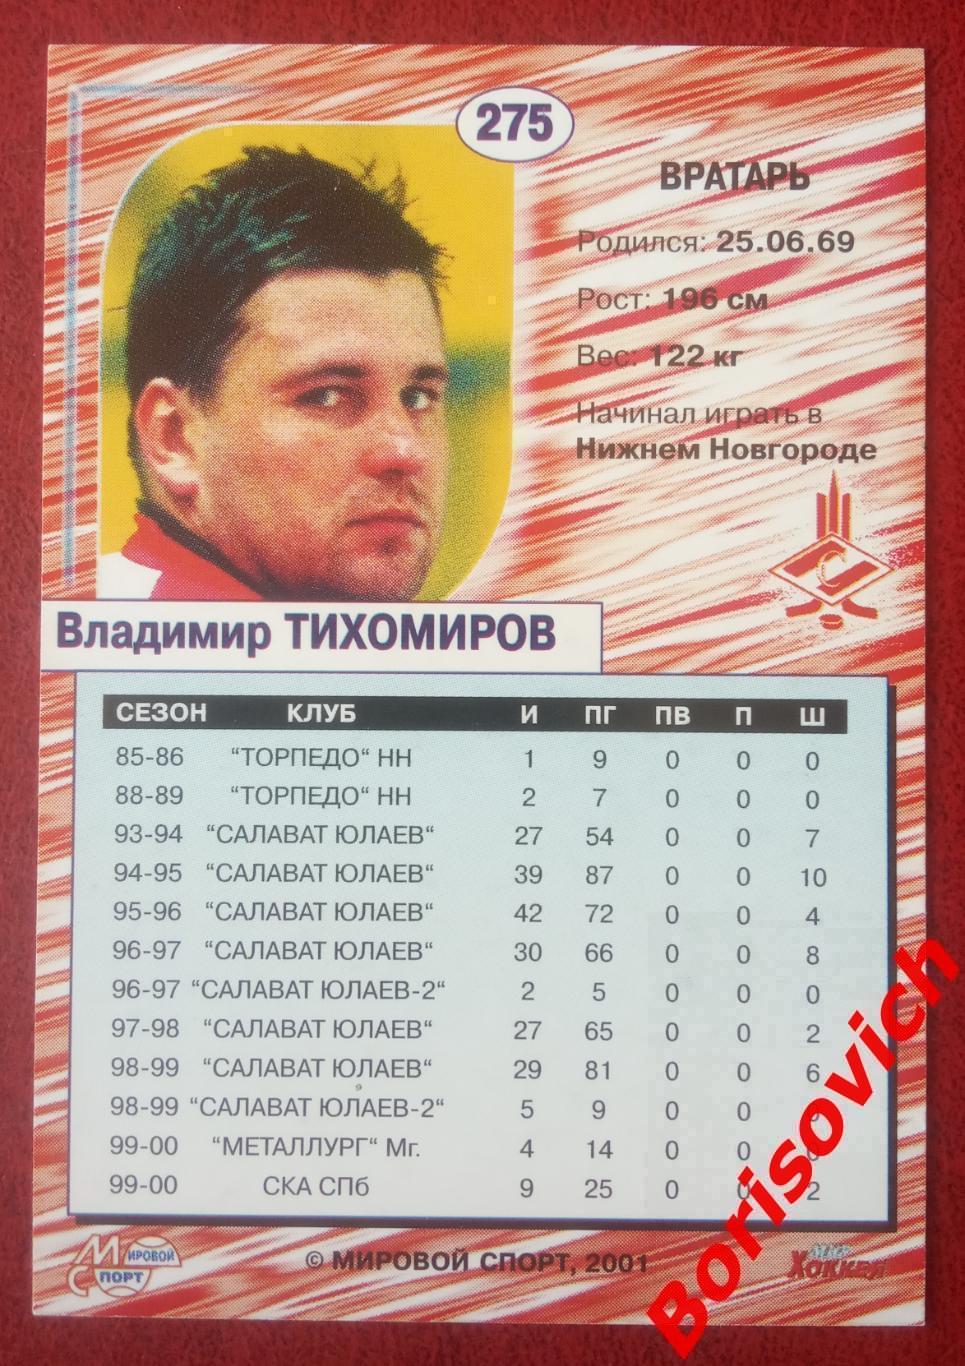 Владимир Тихомиров Спартак Москва Российский хоккей Сезон 2000-2001 N 275. 2 1